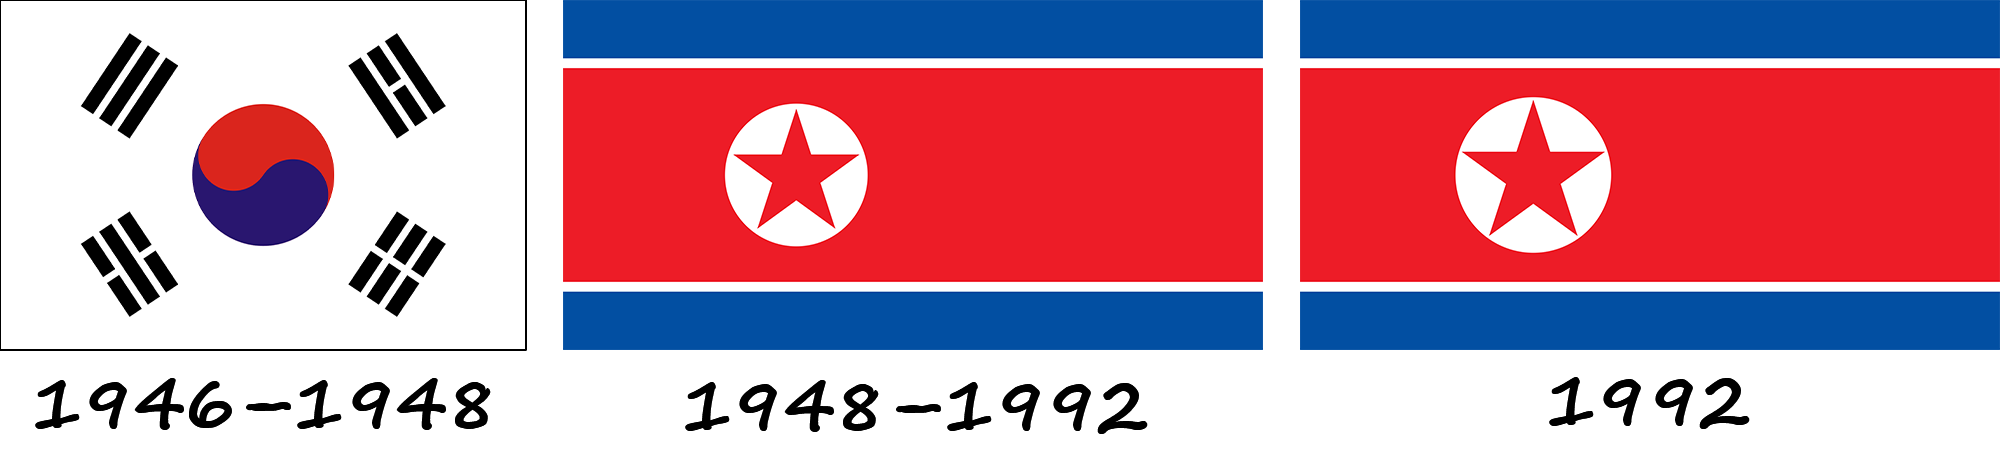 Histoire du drapeau nord-coréen